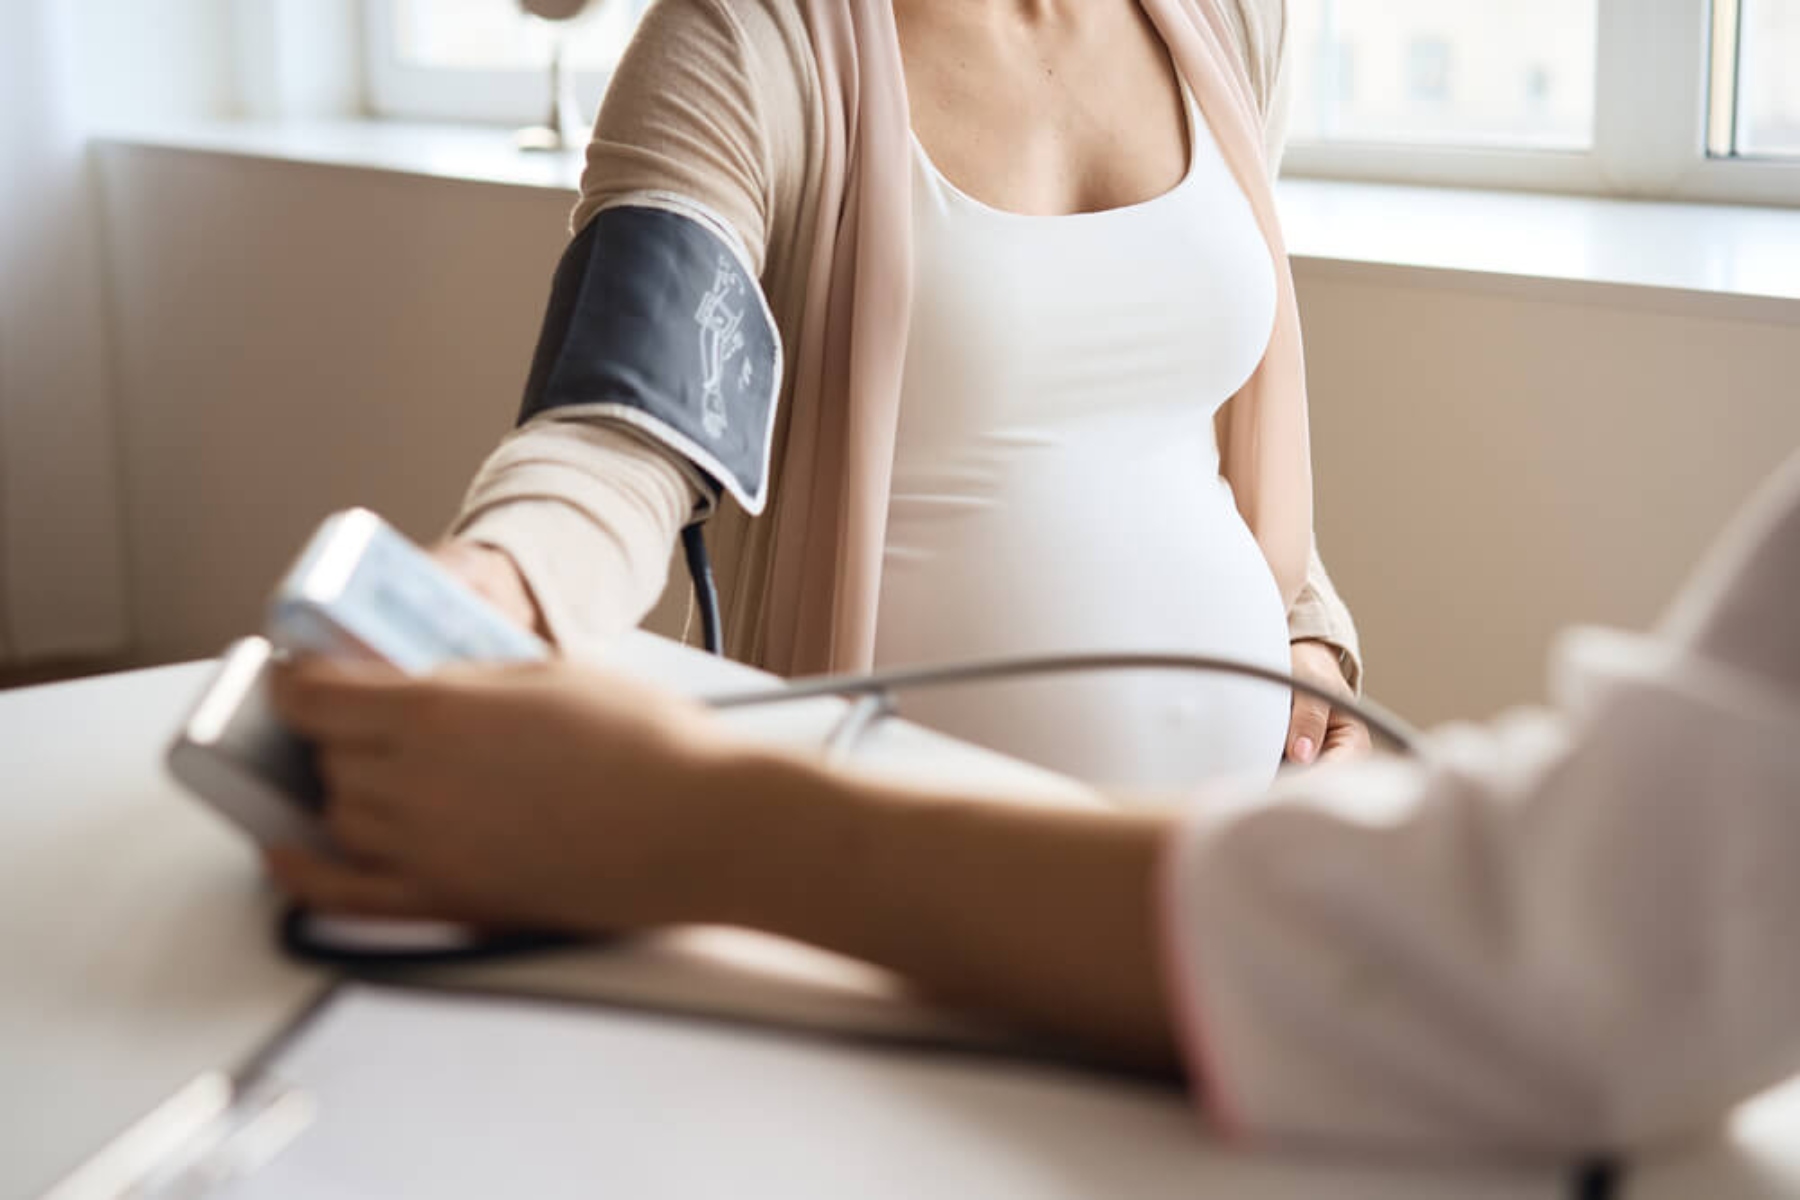 Εγκυμοσύνη: Η τεχνολογία φέρνει διπλάσιο κίνδυνο προεκλαμψίας